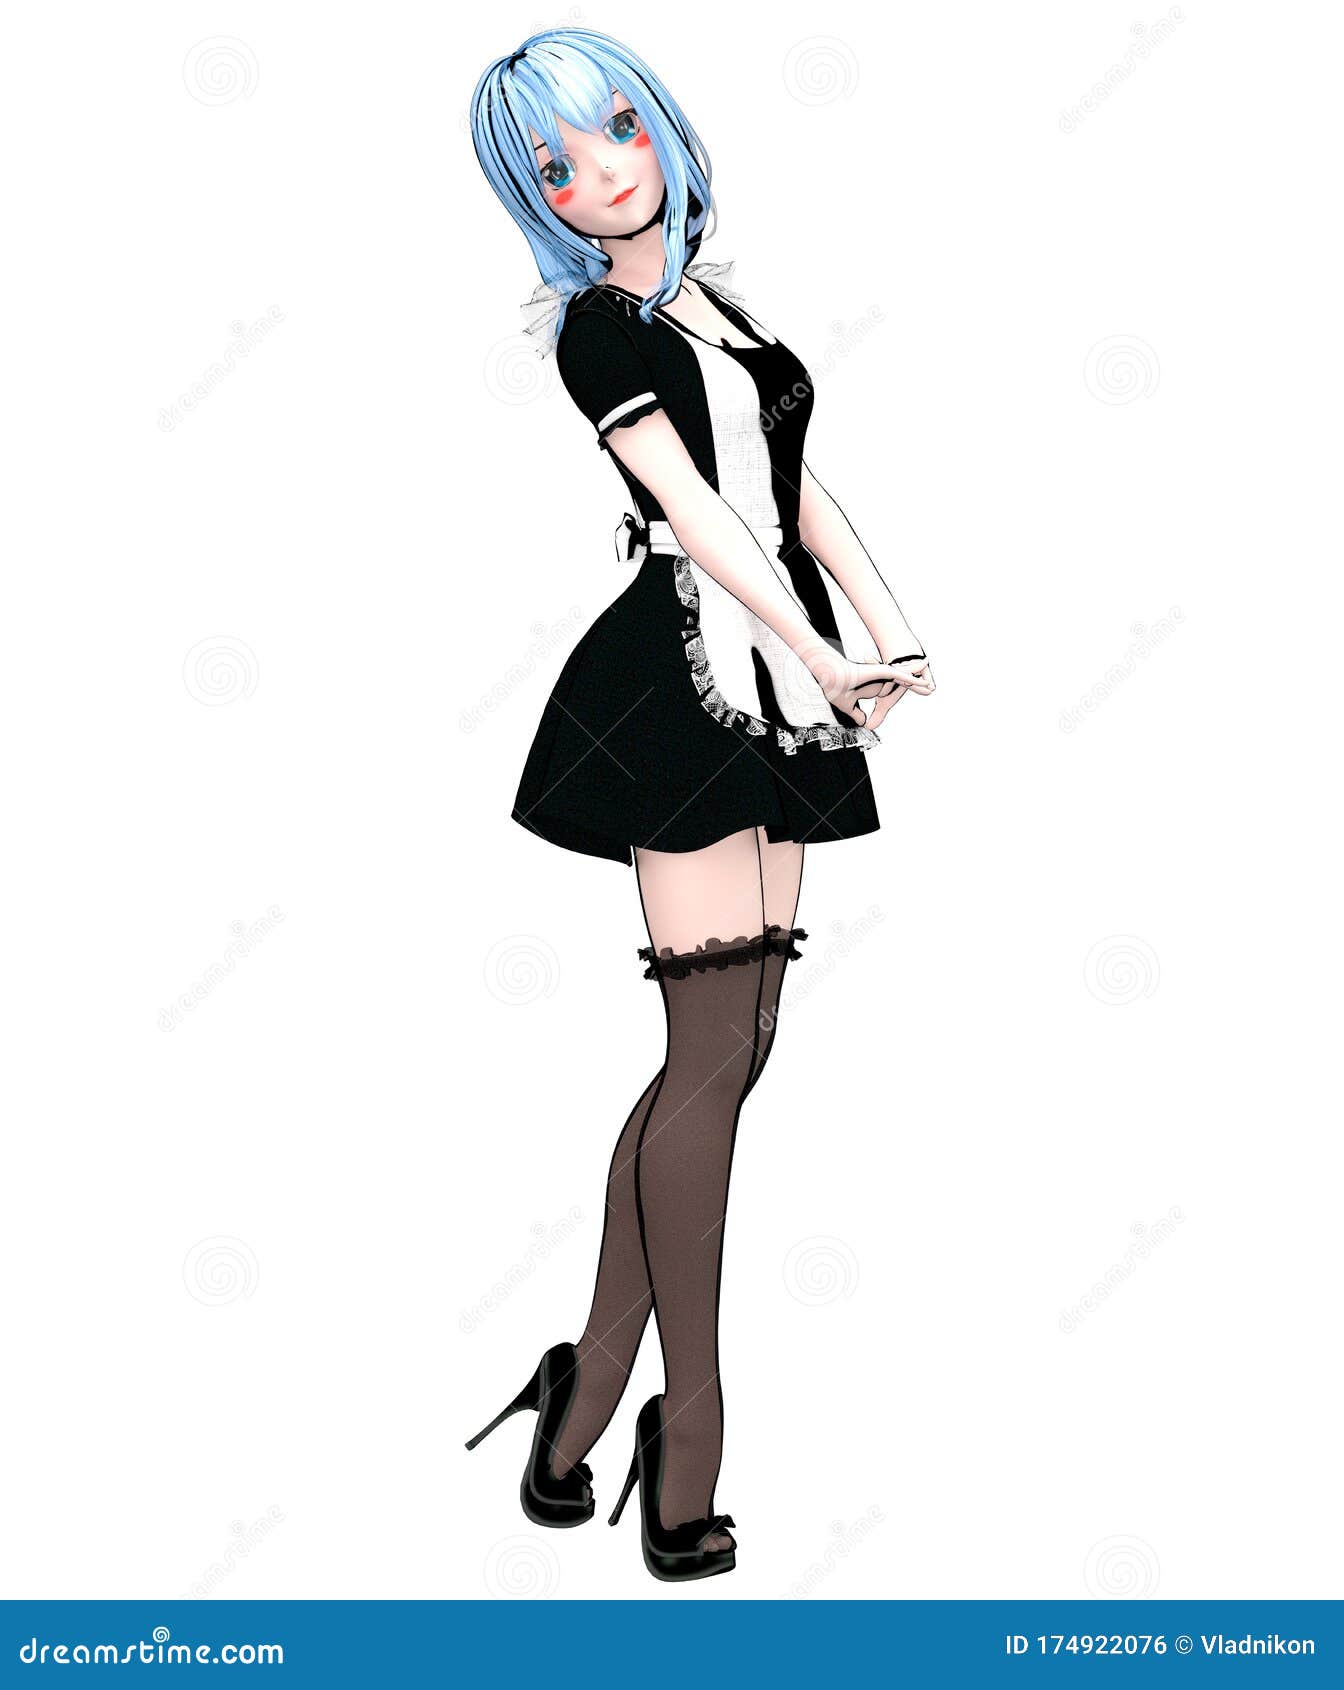 Japanese 3d anime girl stock illustration. Illustration of design -  174922076